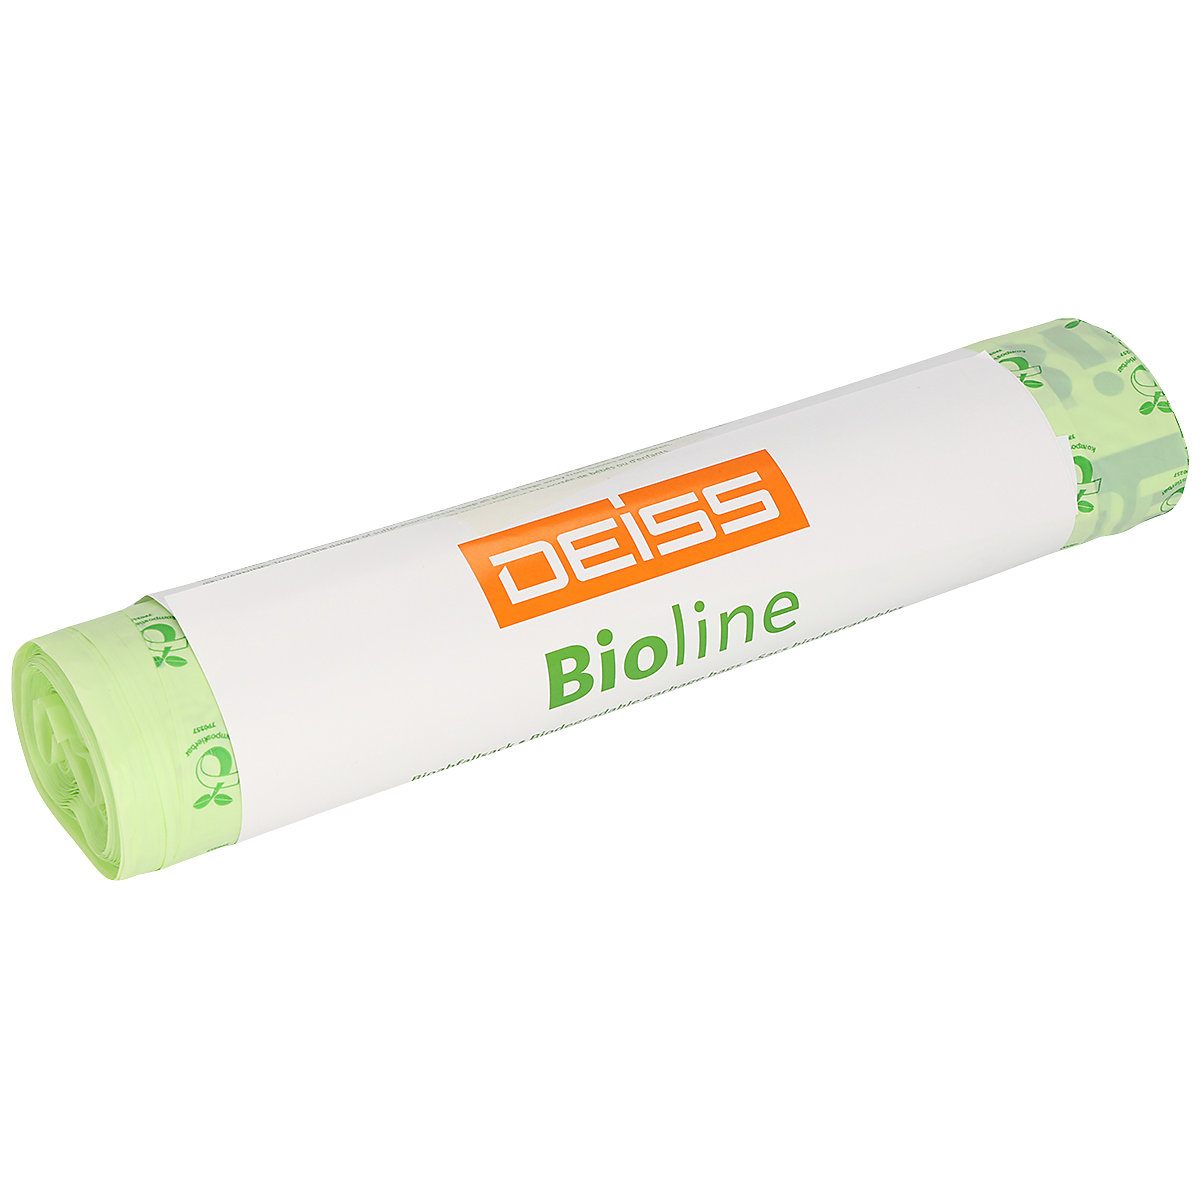 ecovio® bioline waste sacks – Deiss